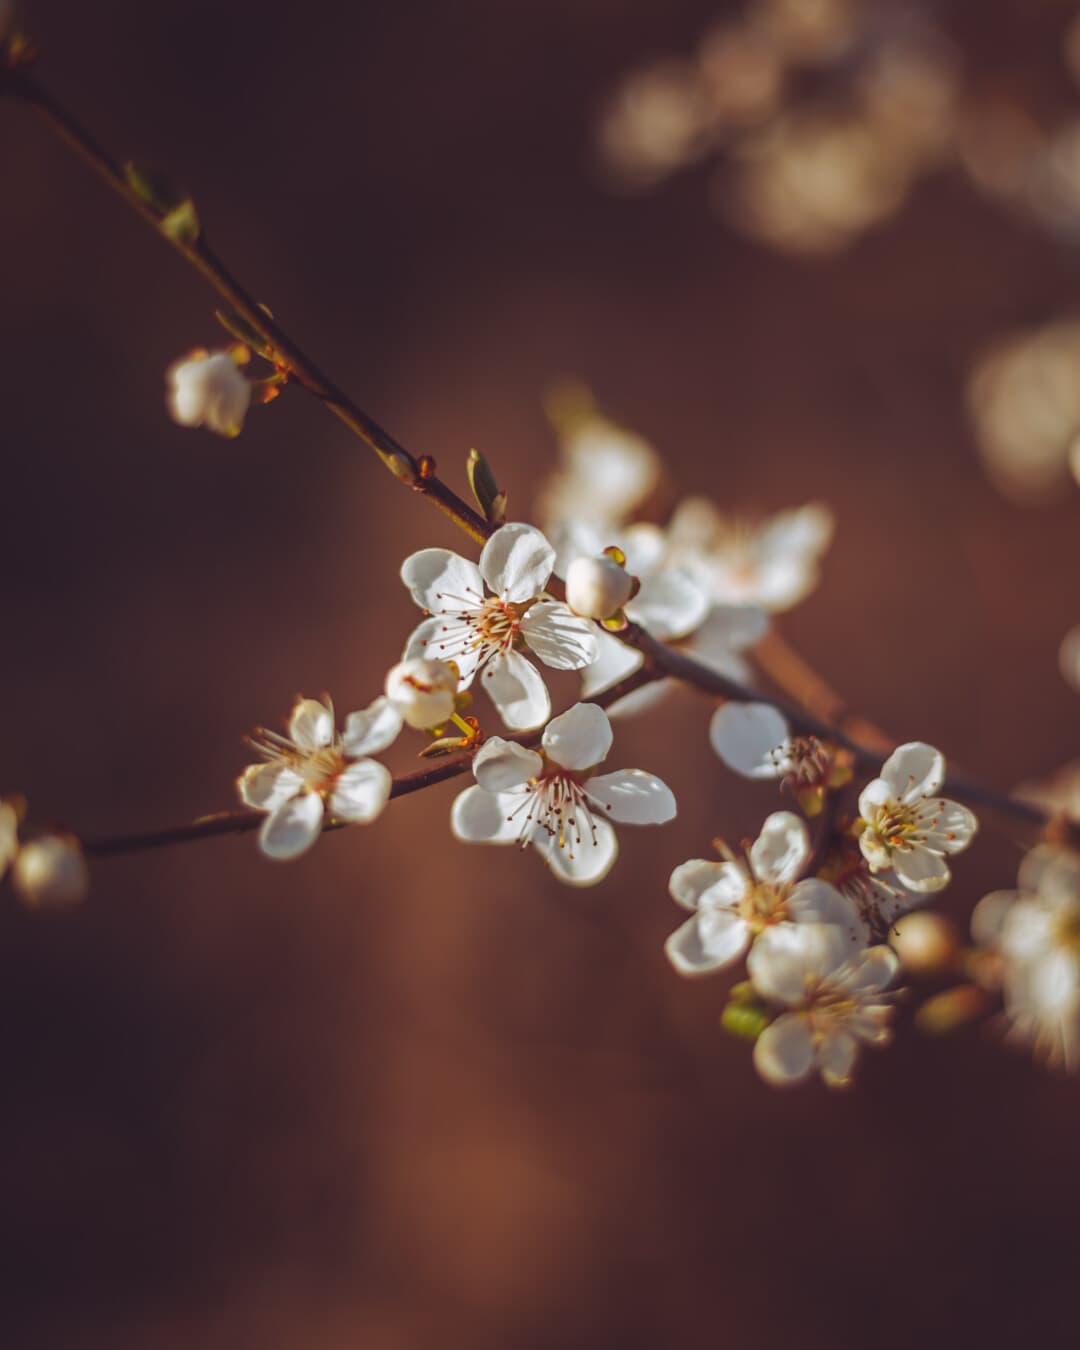 フリー写真画像 春の時間 果樹園 フルーツの木 フォーカス 白い花 花のつぼみ ツリー 梅 自然 花